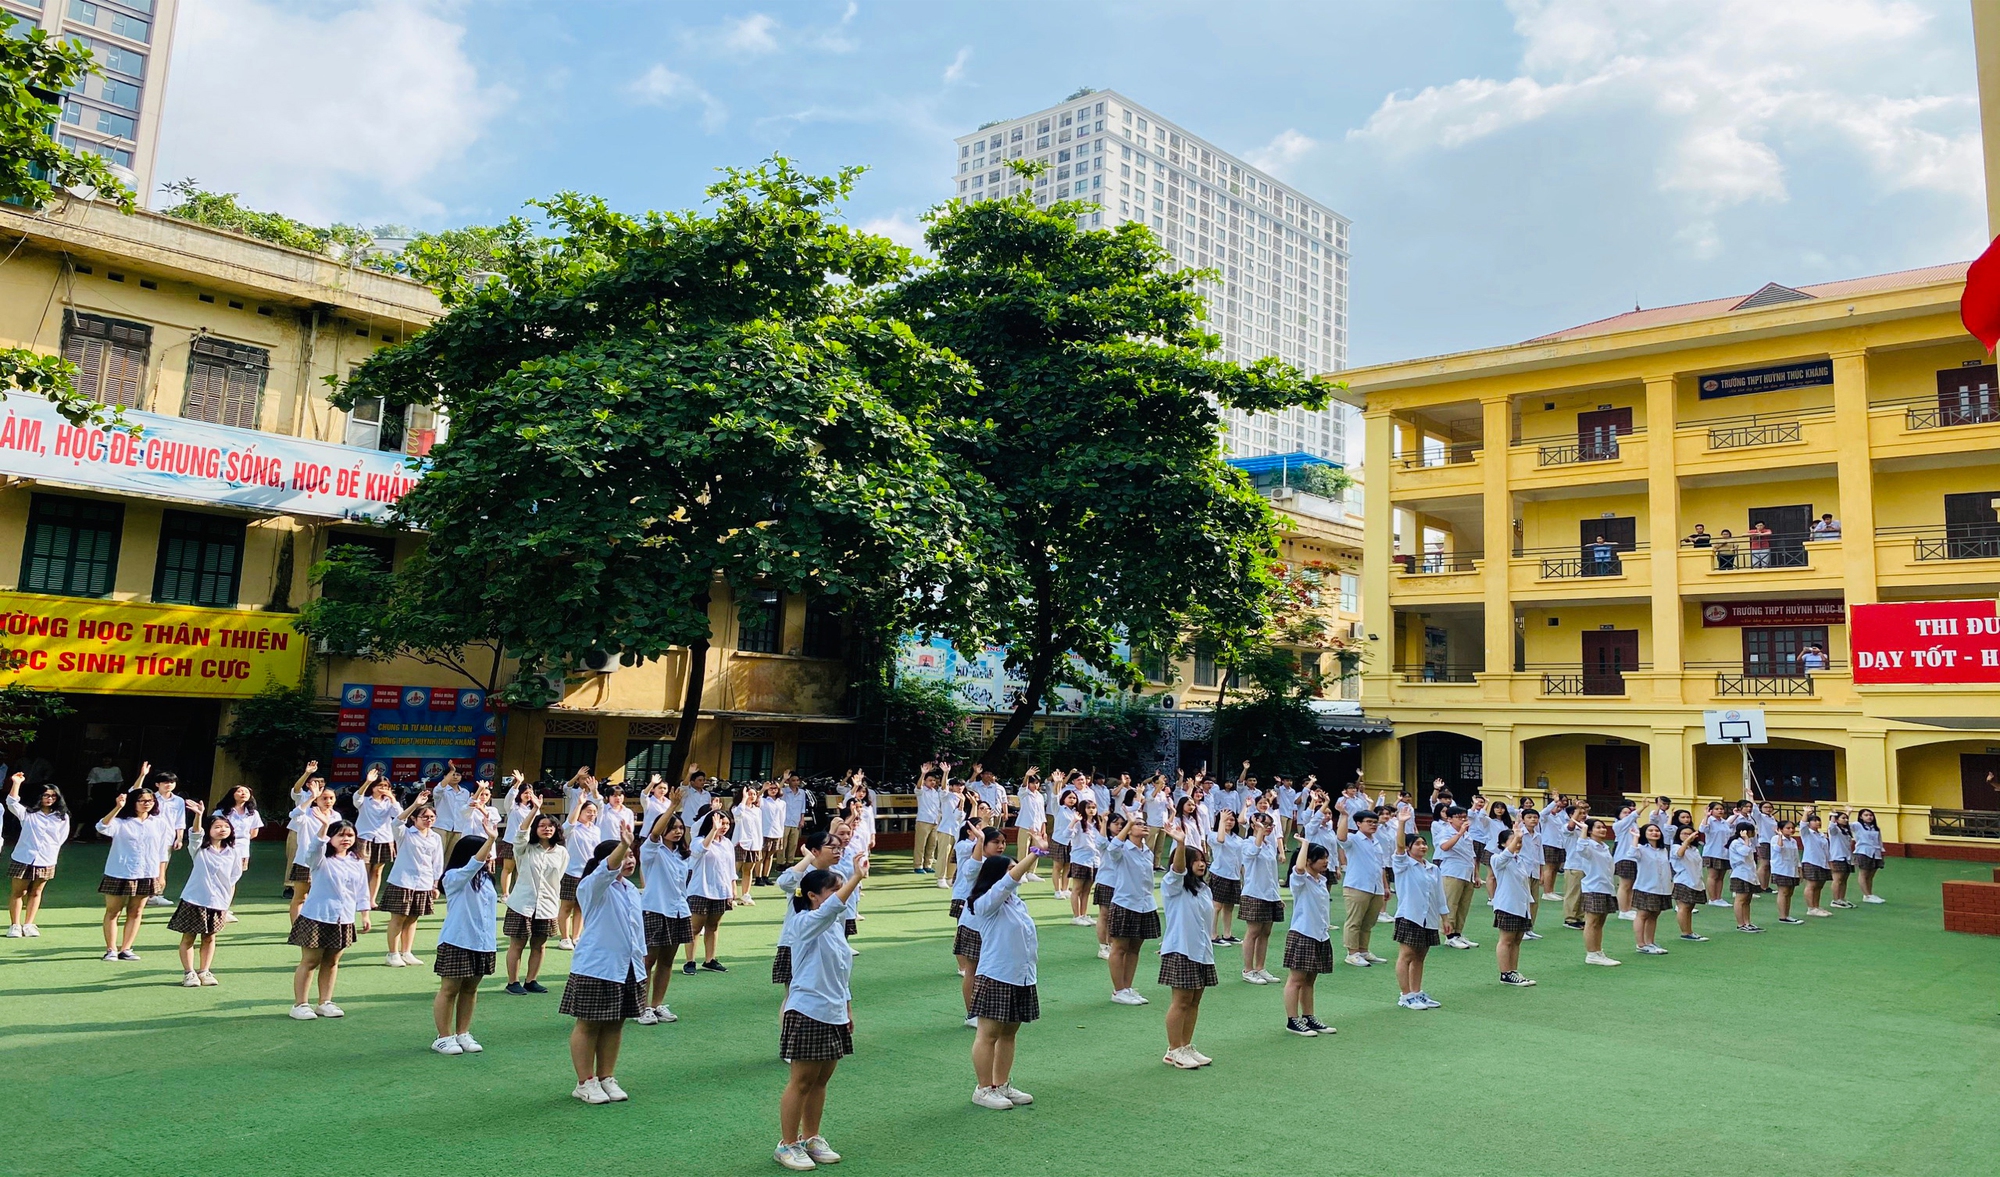 Loạt trường THPT dân lập tốt ở Hà Nội, có học phí chỉ từ 1,5 triệu đồng/tháng trở lên, phụ huynh tham khảo- Ảnh 6.